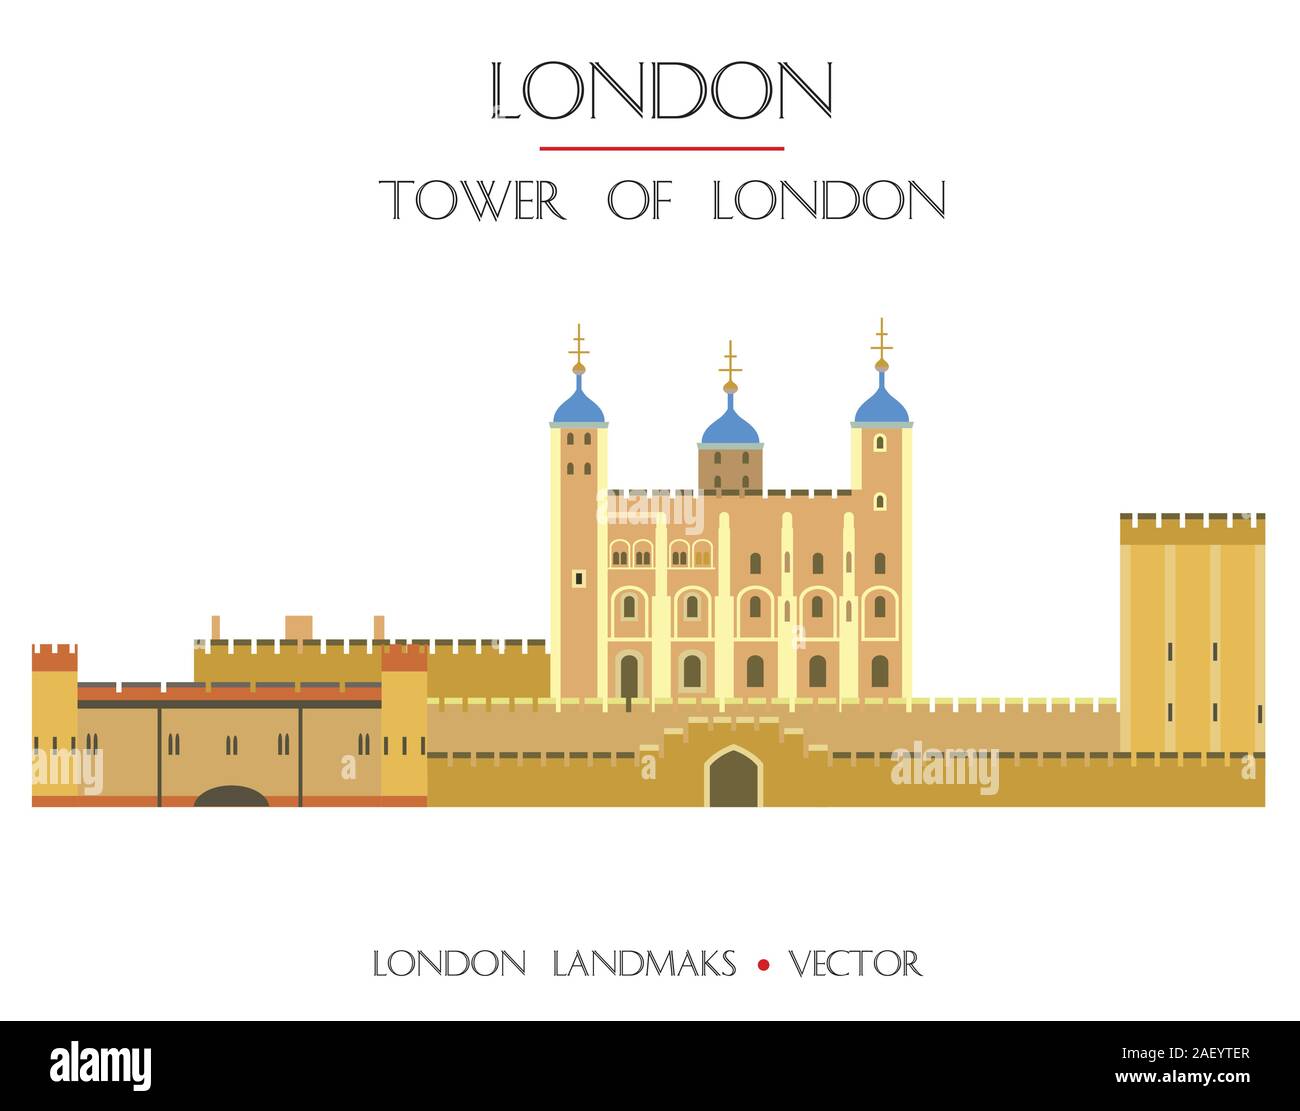 Vecteur coloré Tour de Londres, forteresse célèbre monument de Londres, en Angleterre. Télévision vecteur illustration isolé sur fond blanc. Stock illustratio Illustration de Vecteur